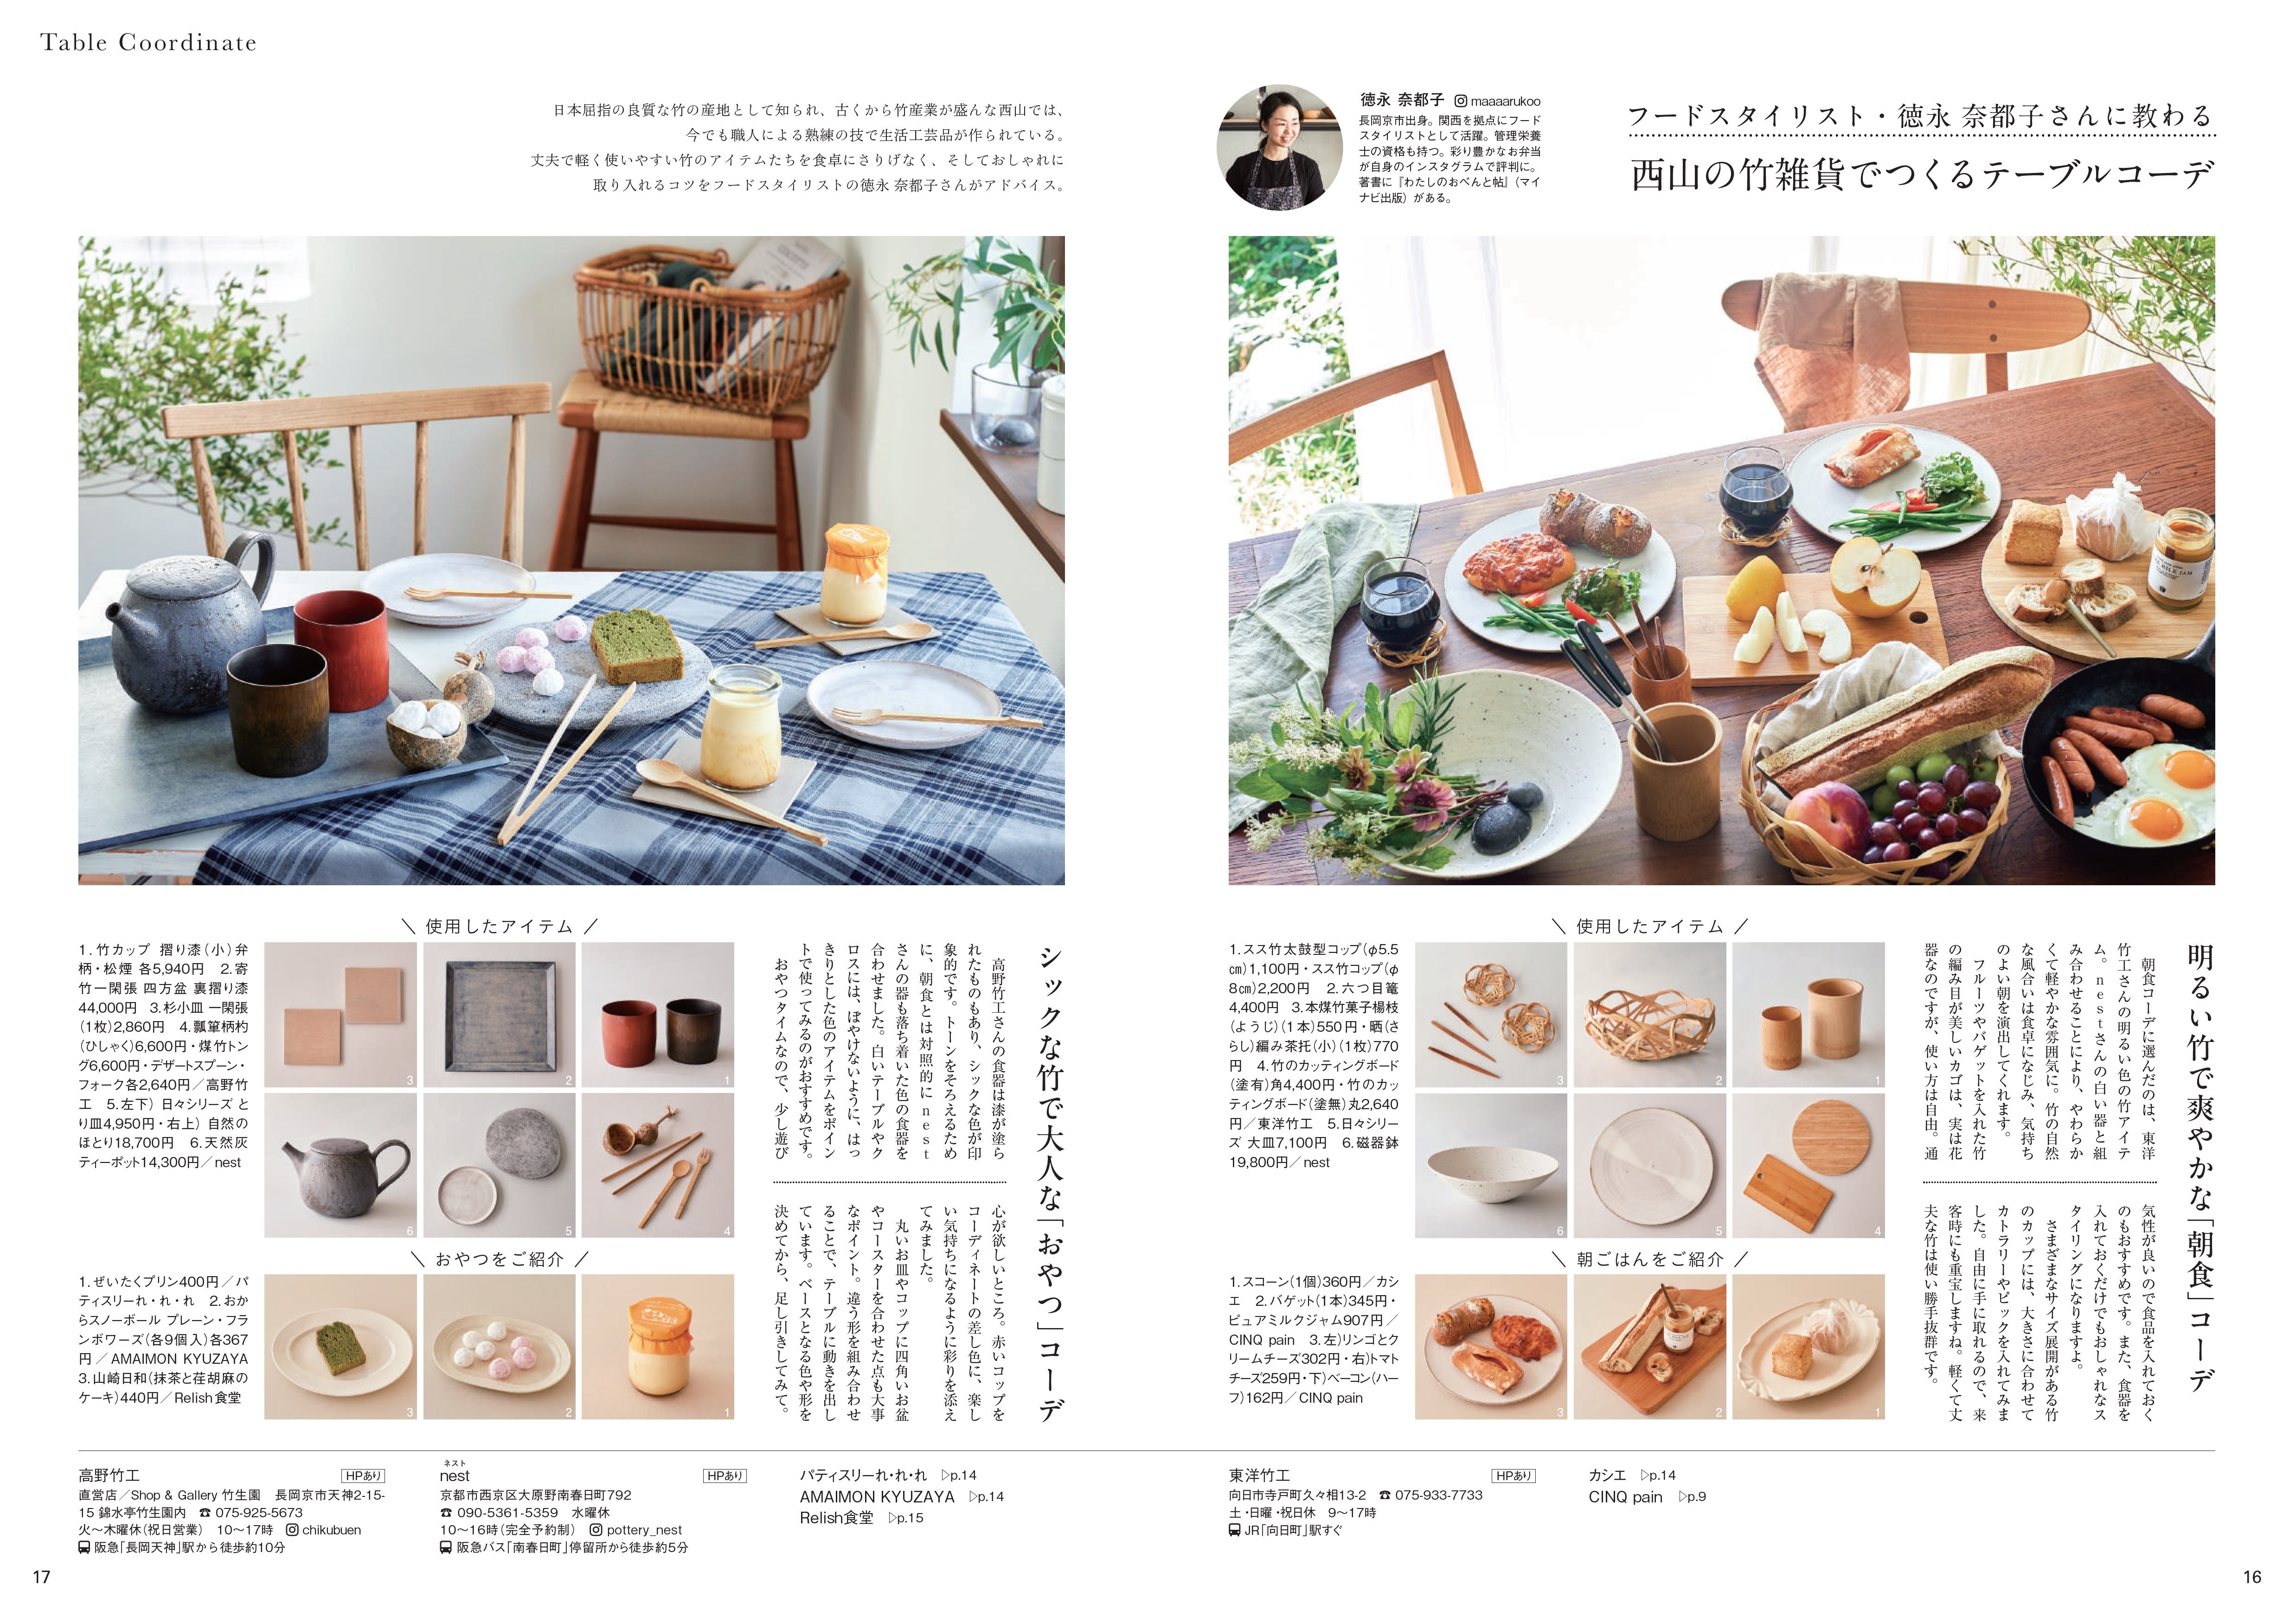 「はじめまして京都西山」の竹雑貨でテーブルコーデページの画像